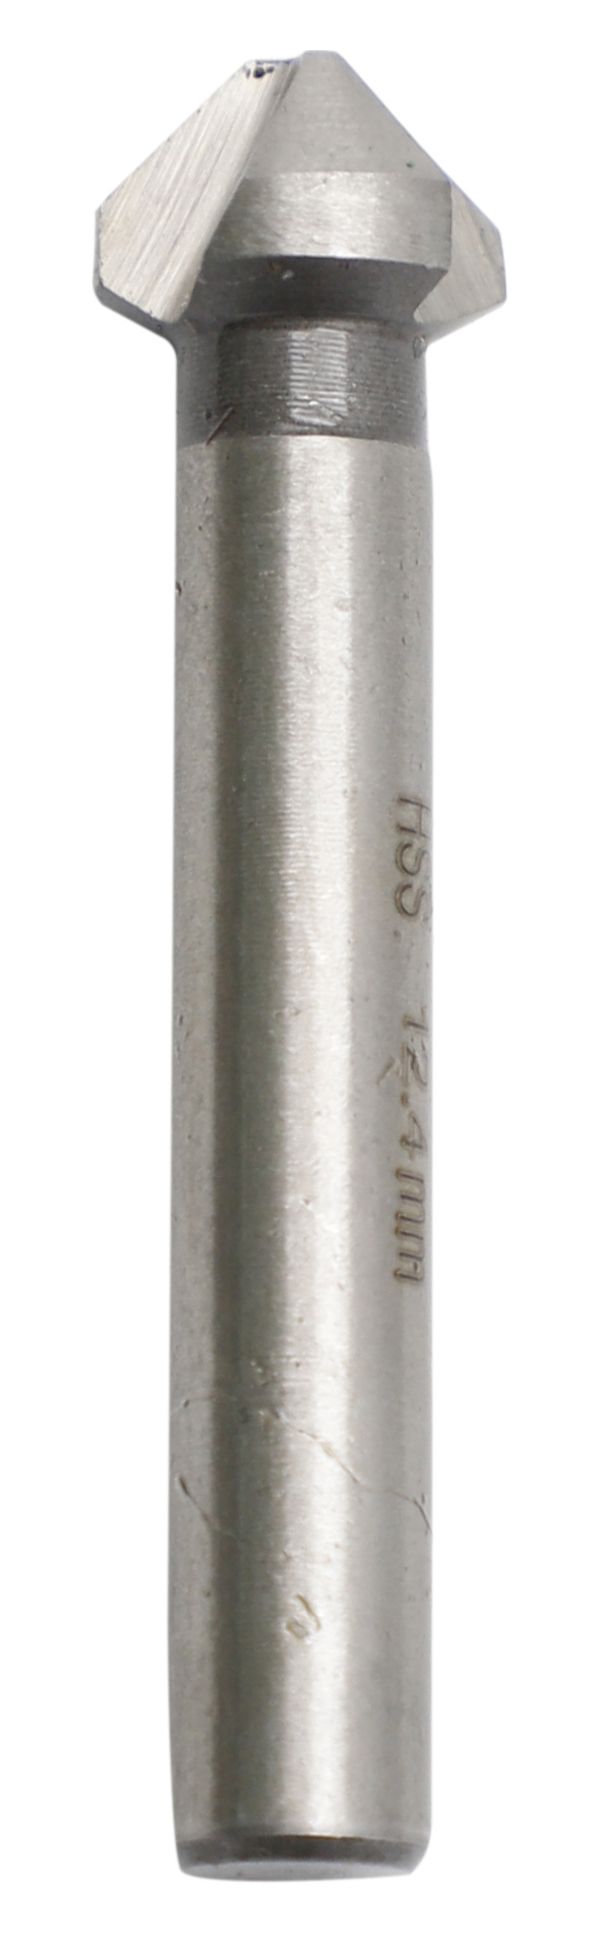 Wickes Countersink Drill Bit - 8 x 12.4 x 56mm